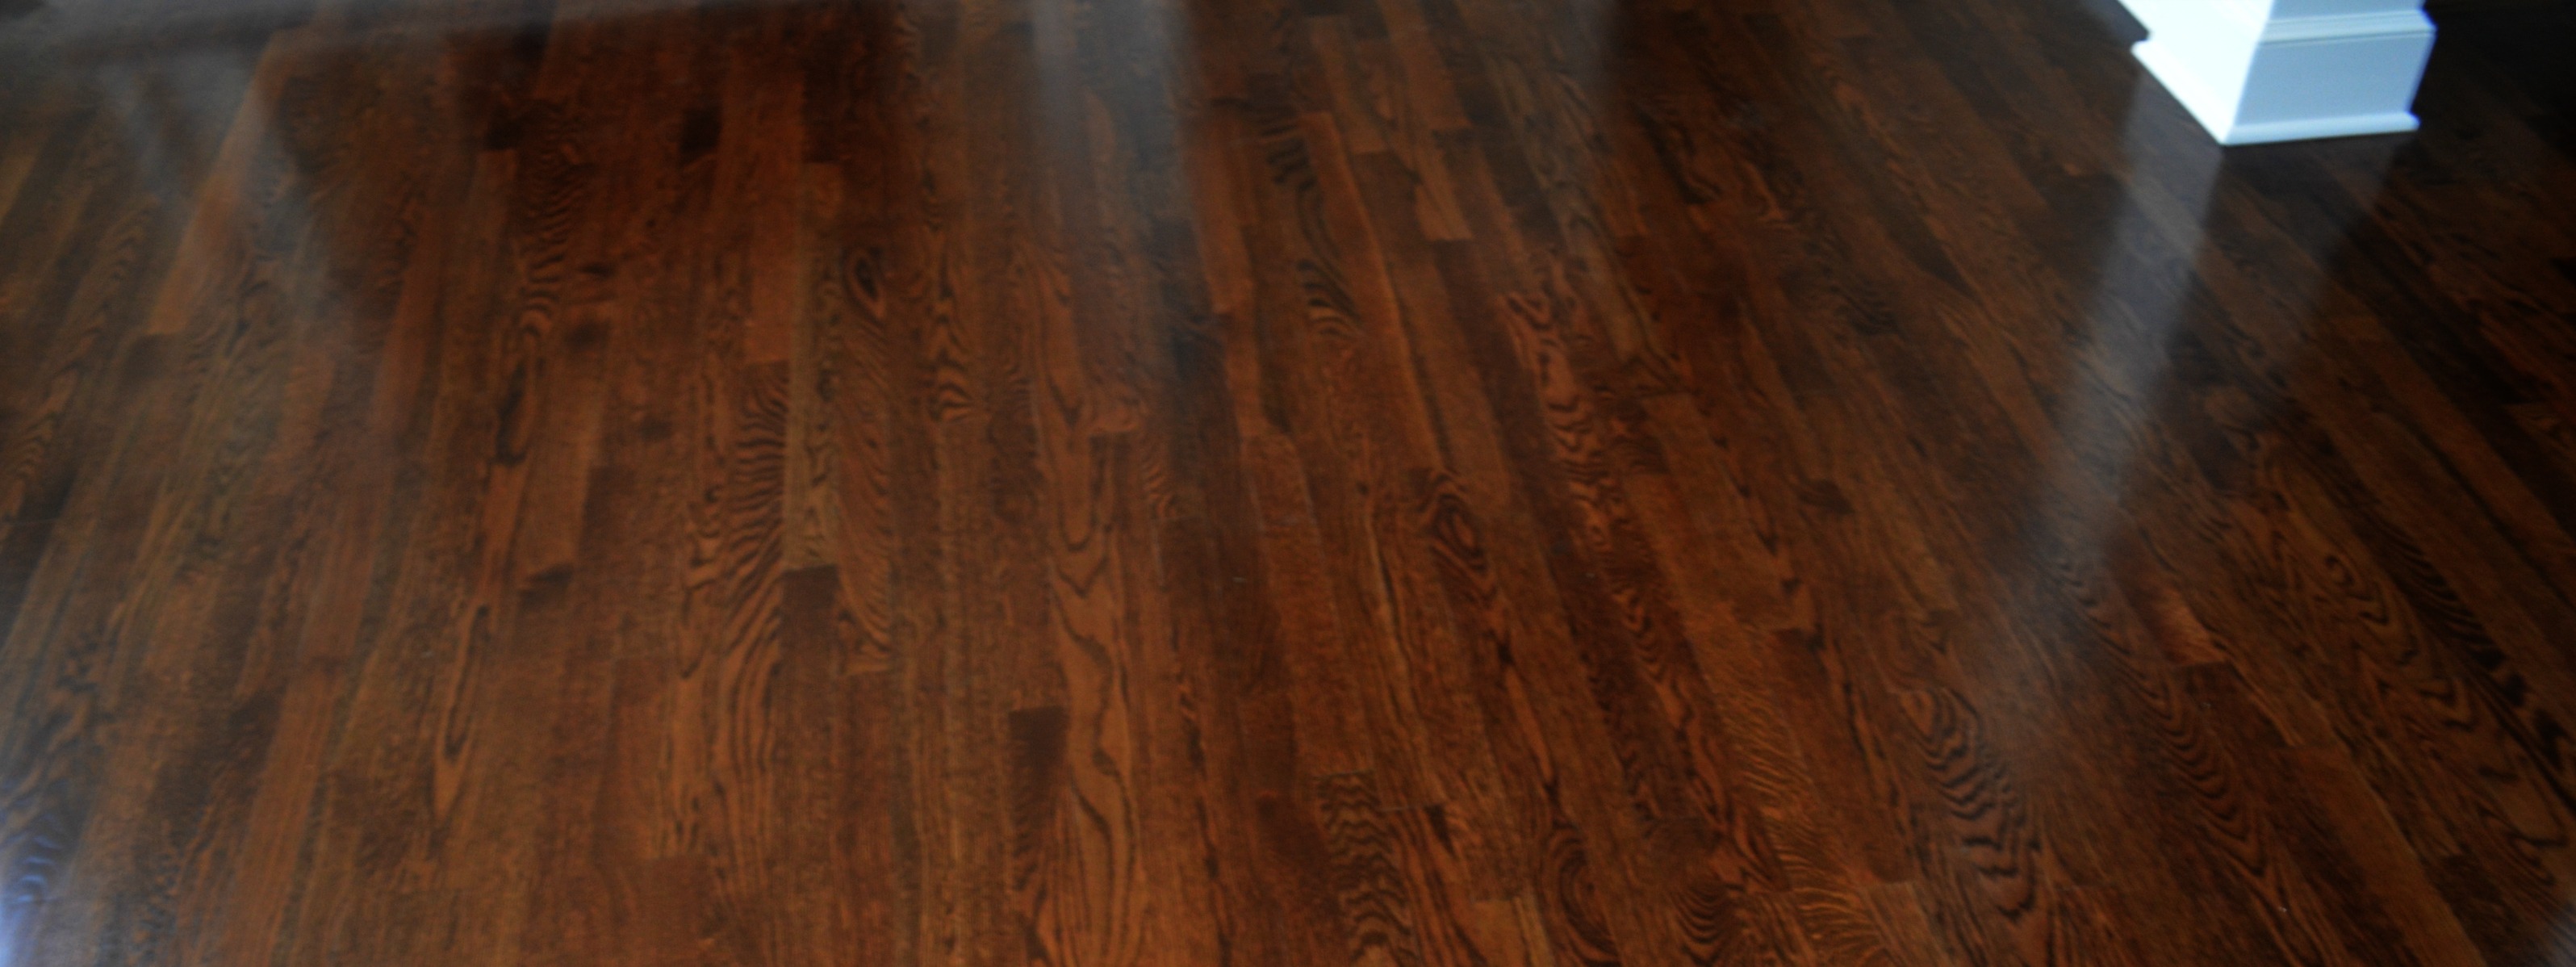 Hardwood Flooring | Cork Flooring| Remodeling